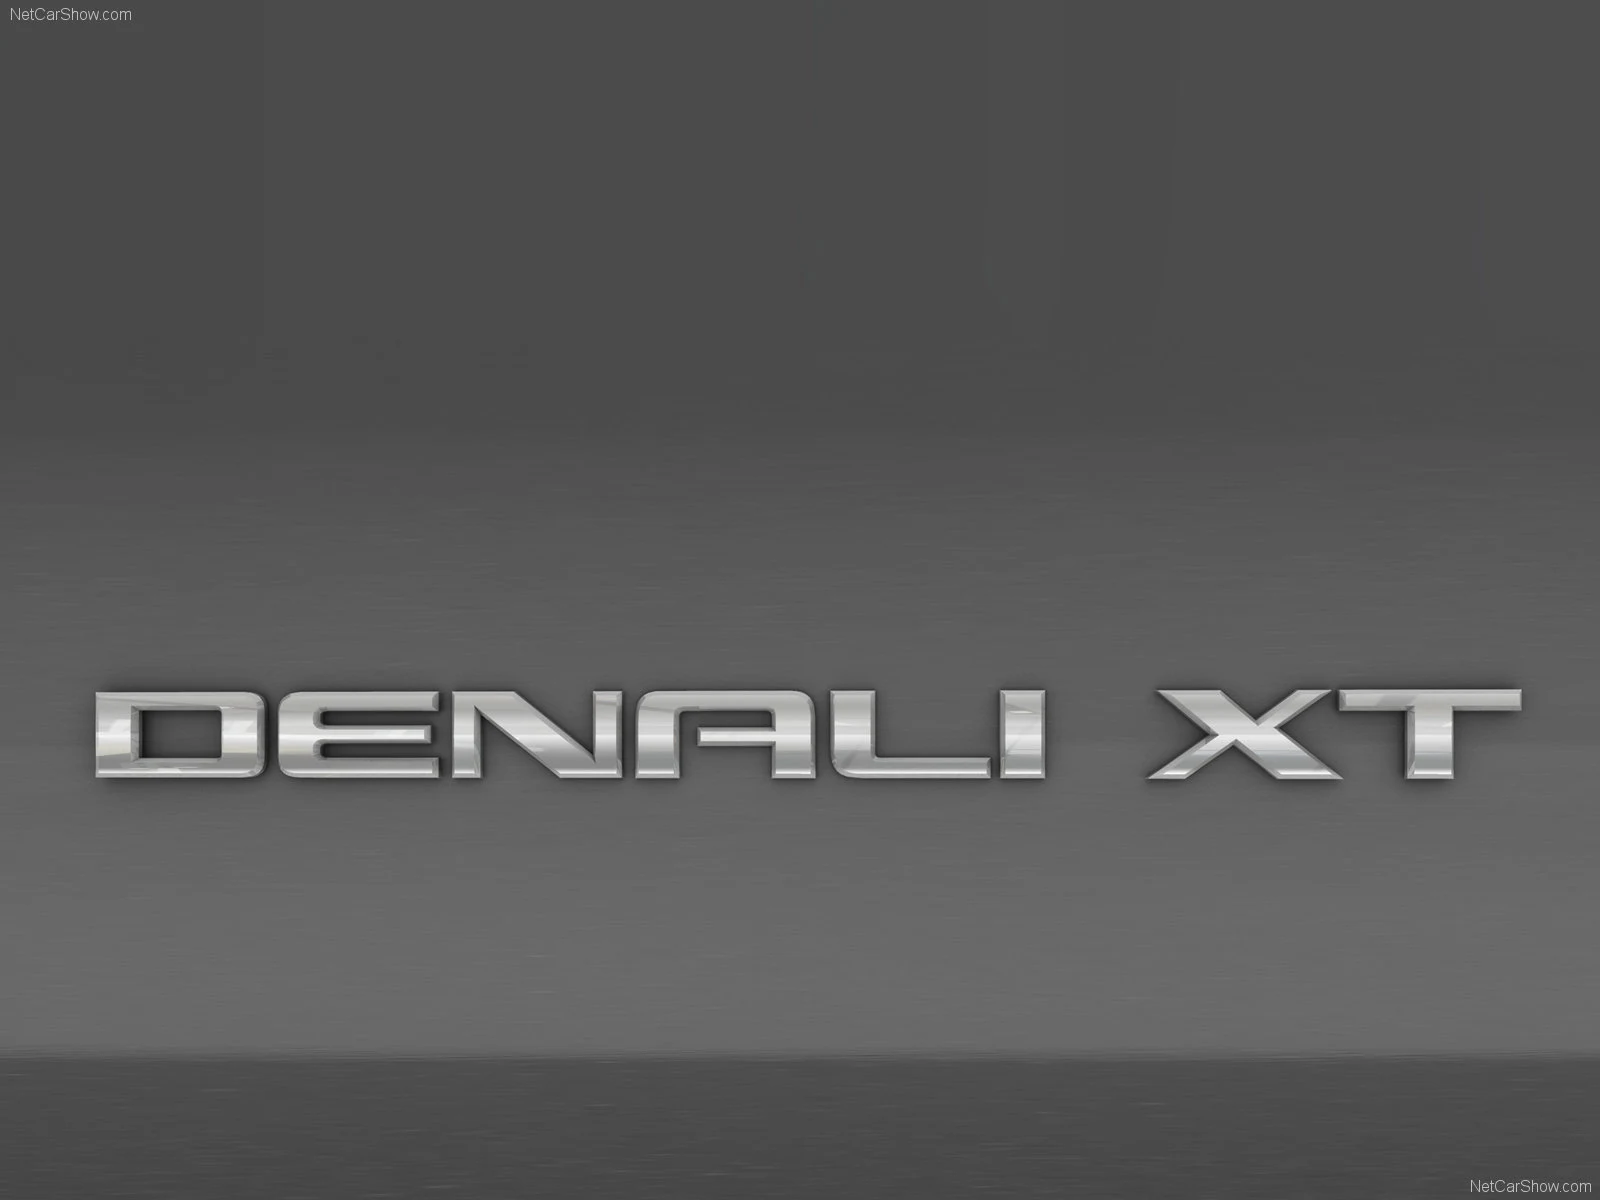 Hình ảnh xe ô tô GMC Denali XT Concept 2008 & nội ngoại thất